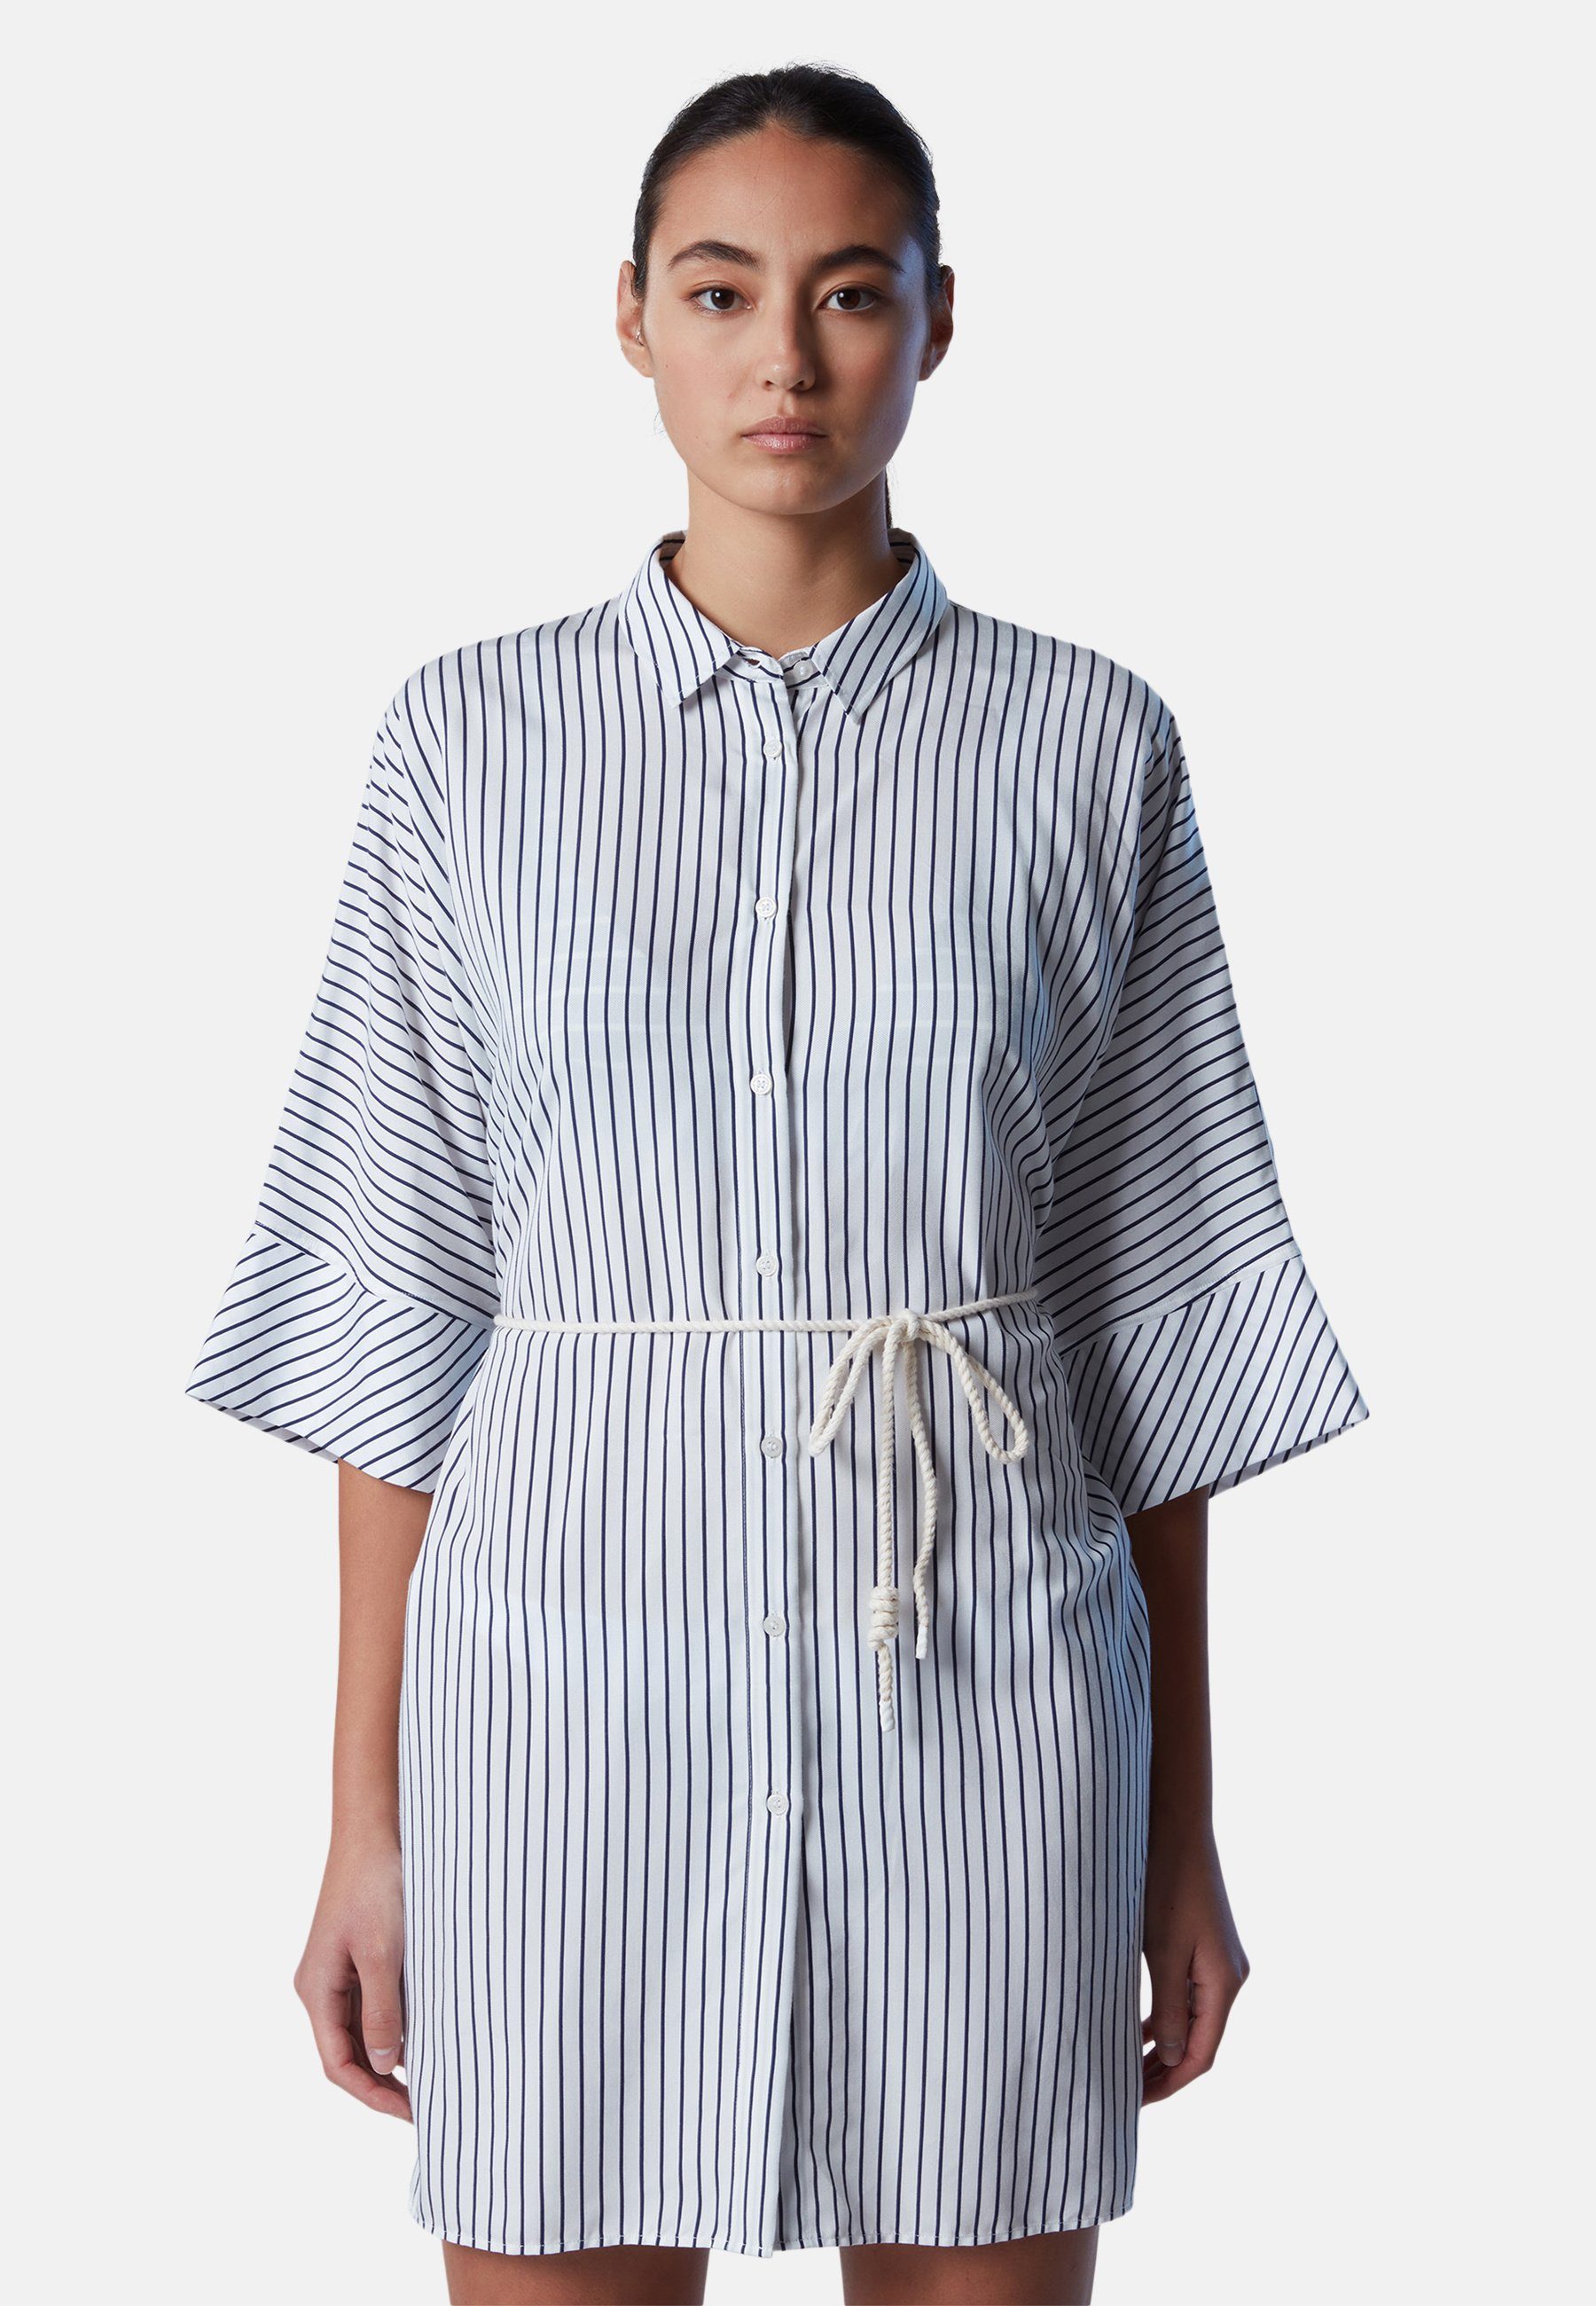 Kimono-Hemdblusenkleid mit klassischem Gestreiftes North Shirtkleid Sails Design